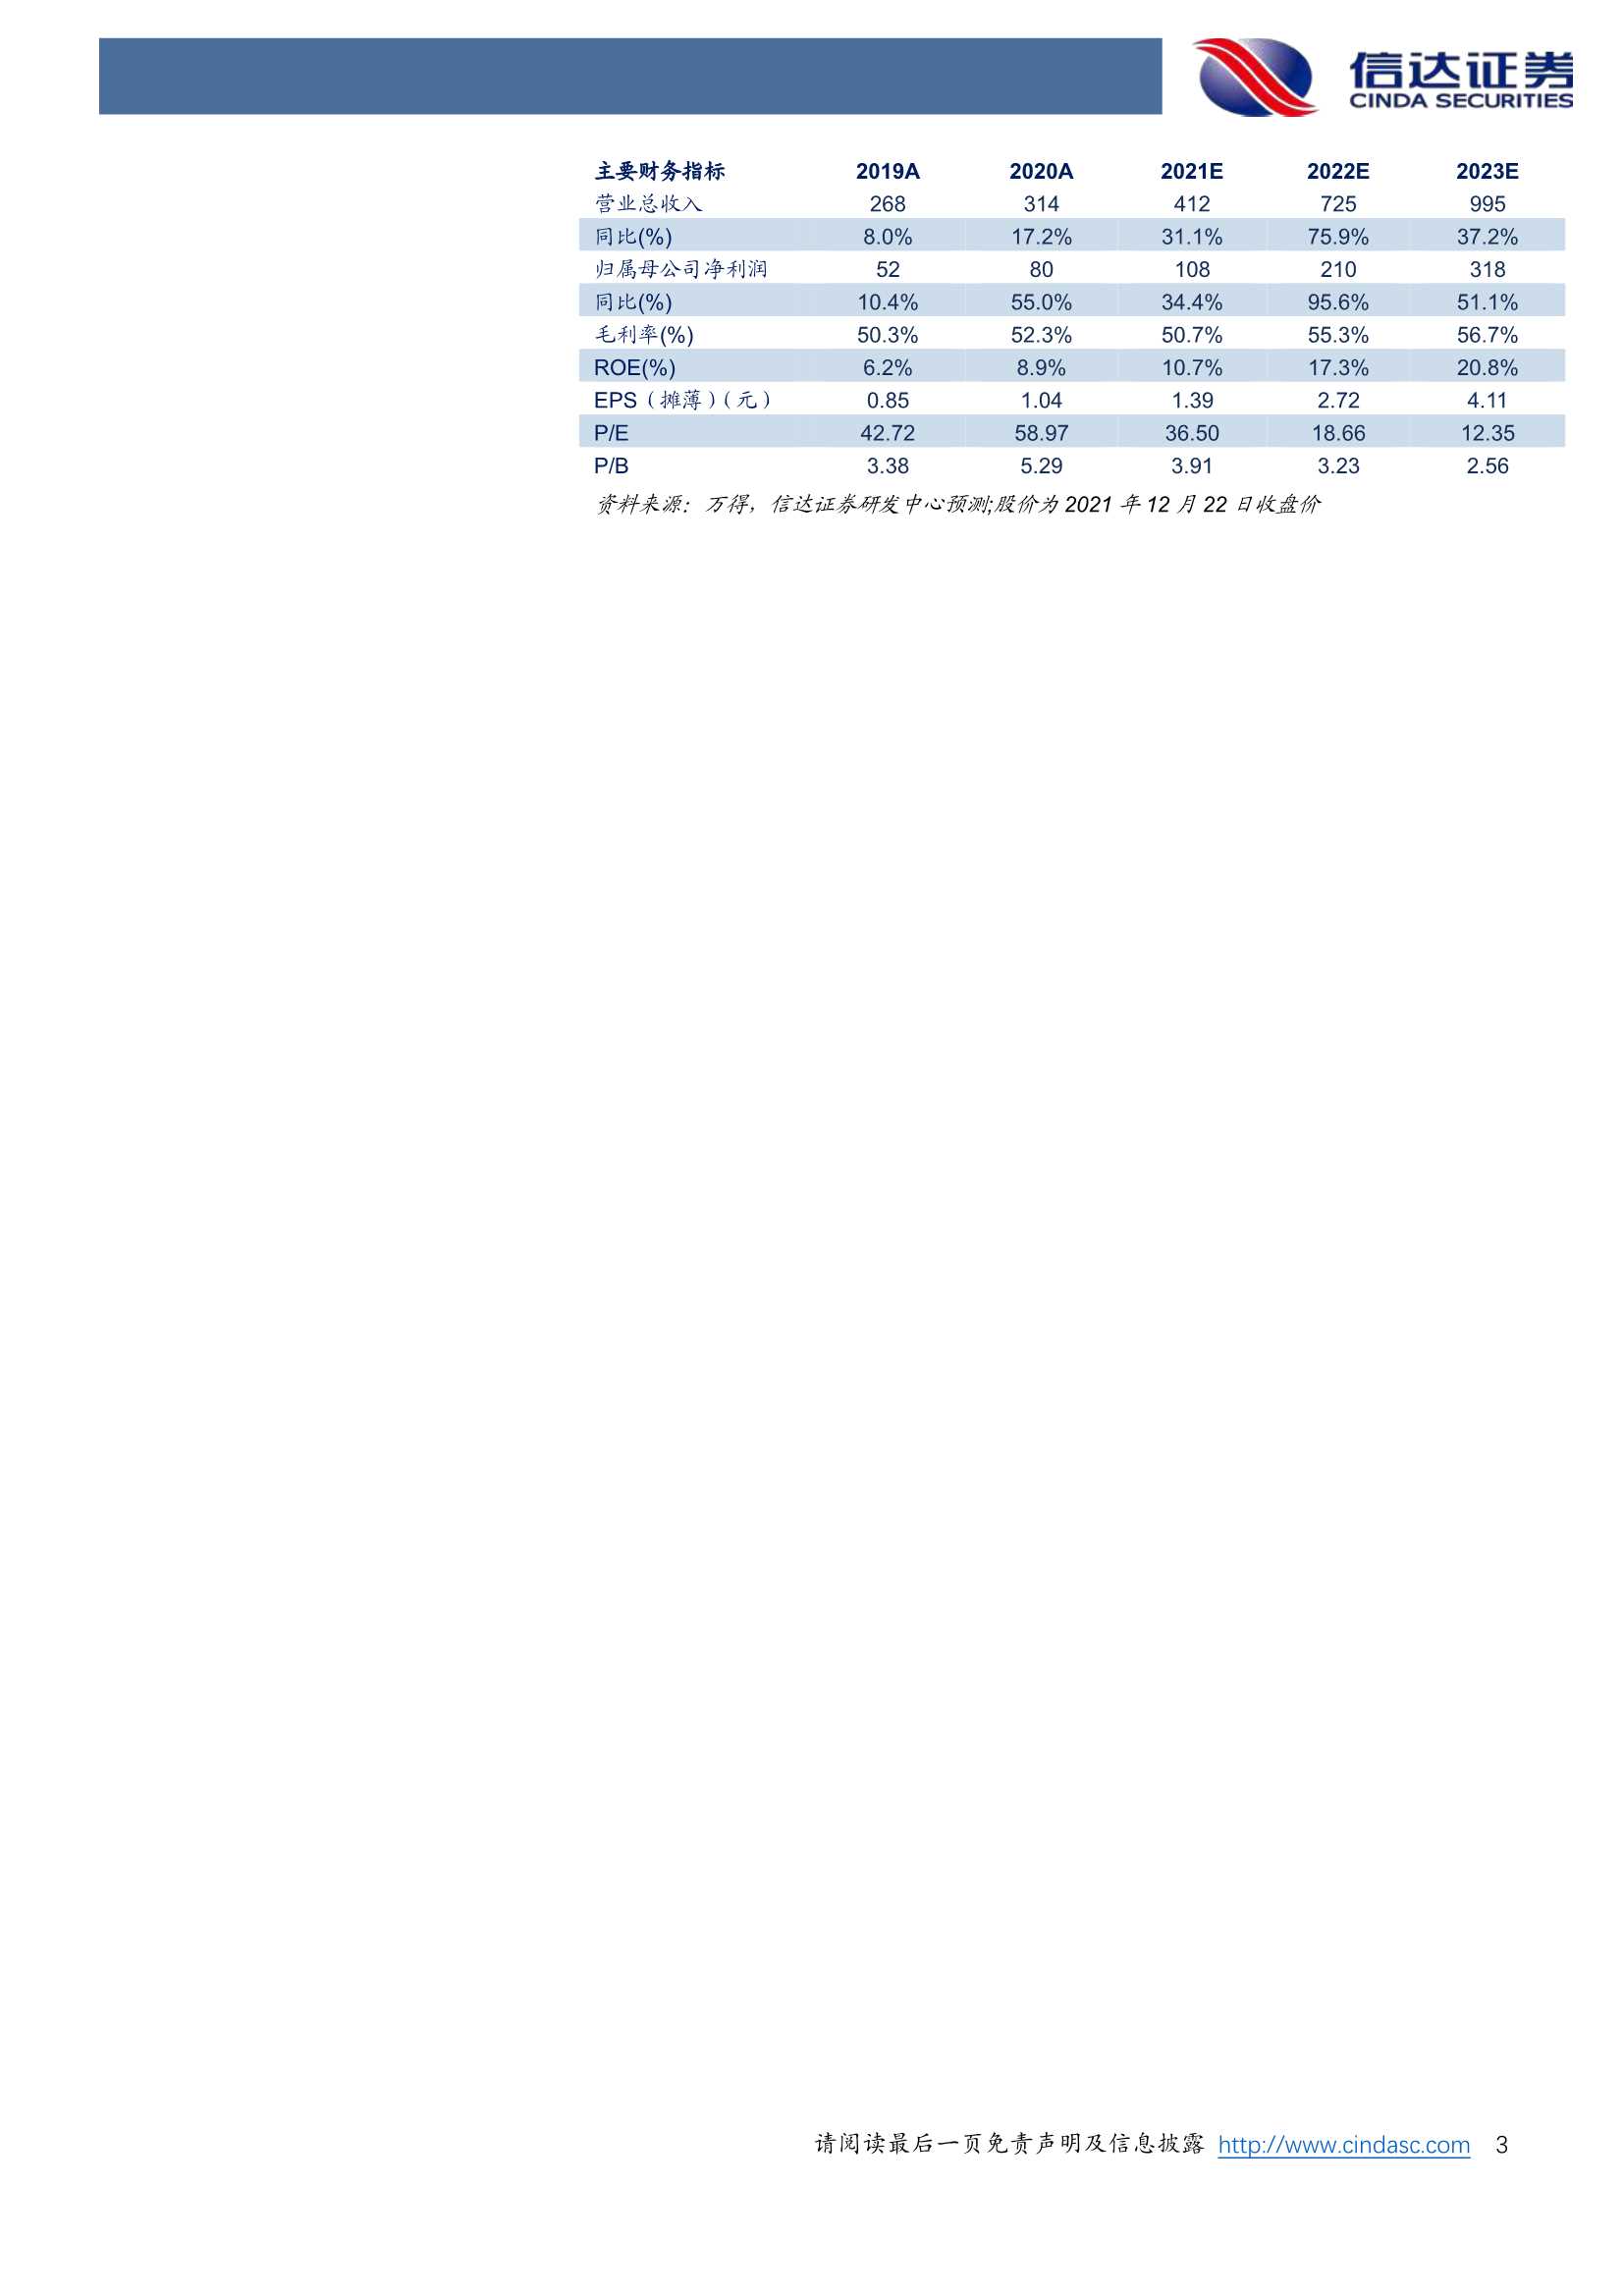 信达证券-奥福环保-688021-公司深度报告：量价齐升，拥抱国六标准下国产化新机遇-20211222-24页